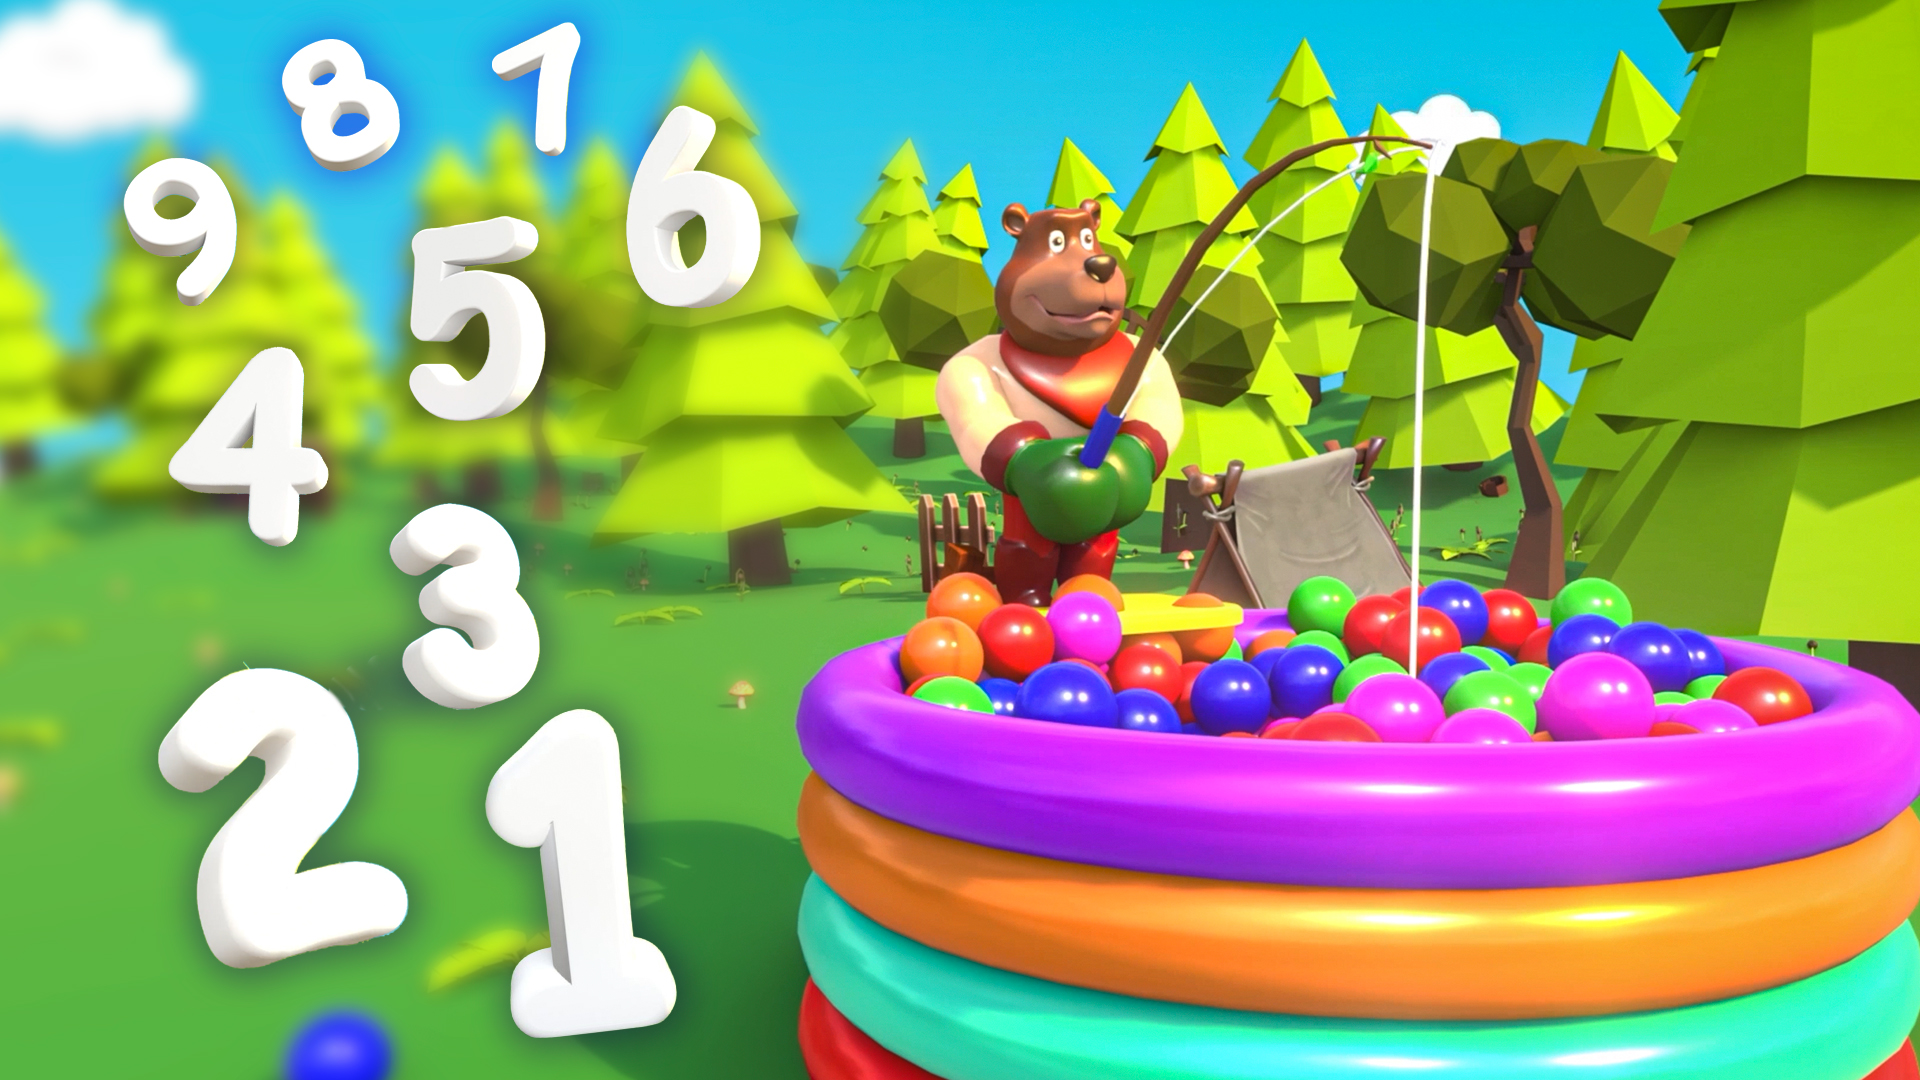 Развивающий мультфильм: учим цифры от 1 до 9. Бассейн с разноцветными шариками, ловим цифры